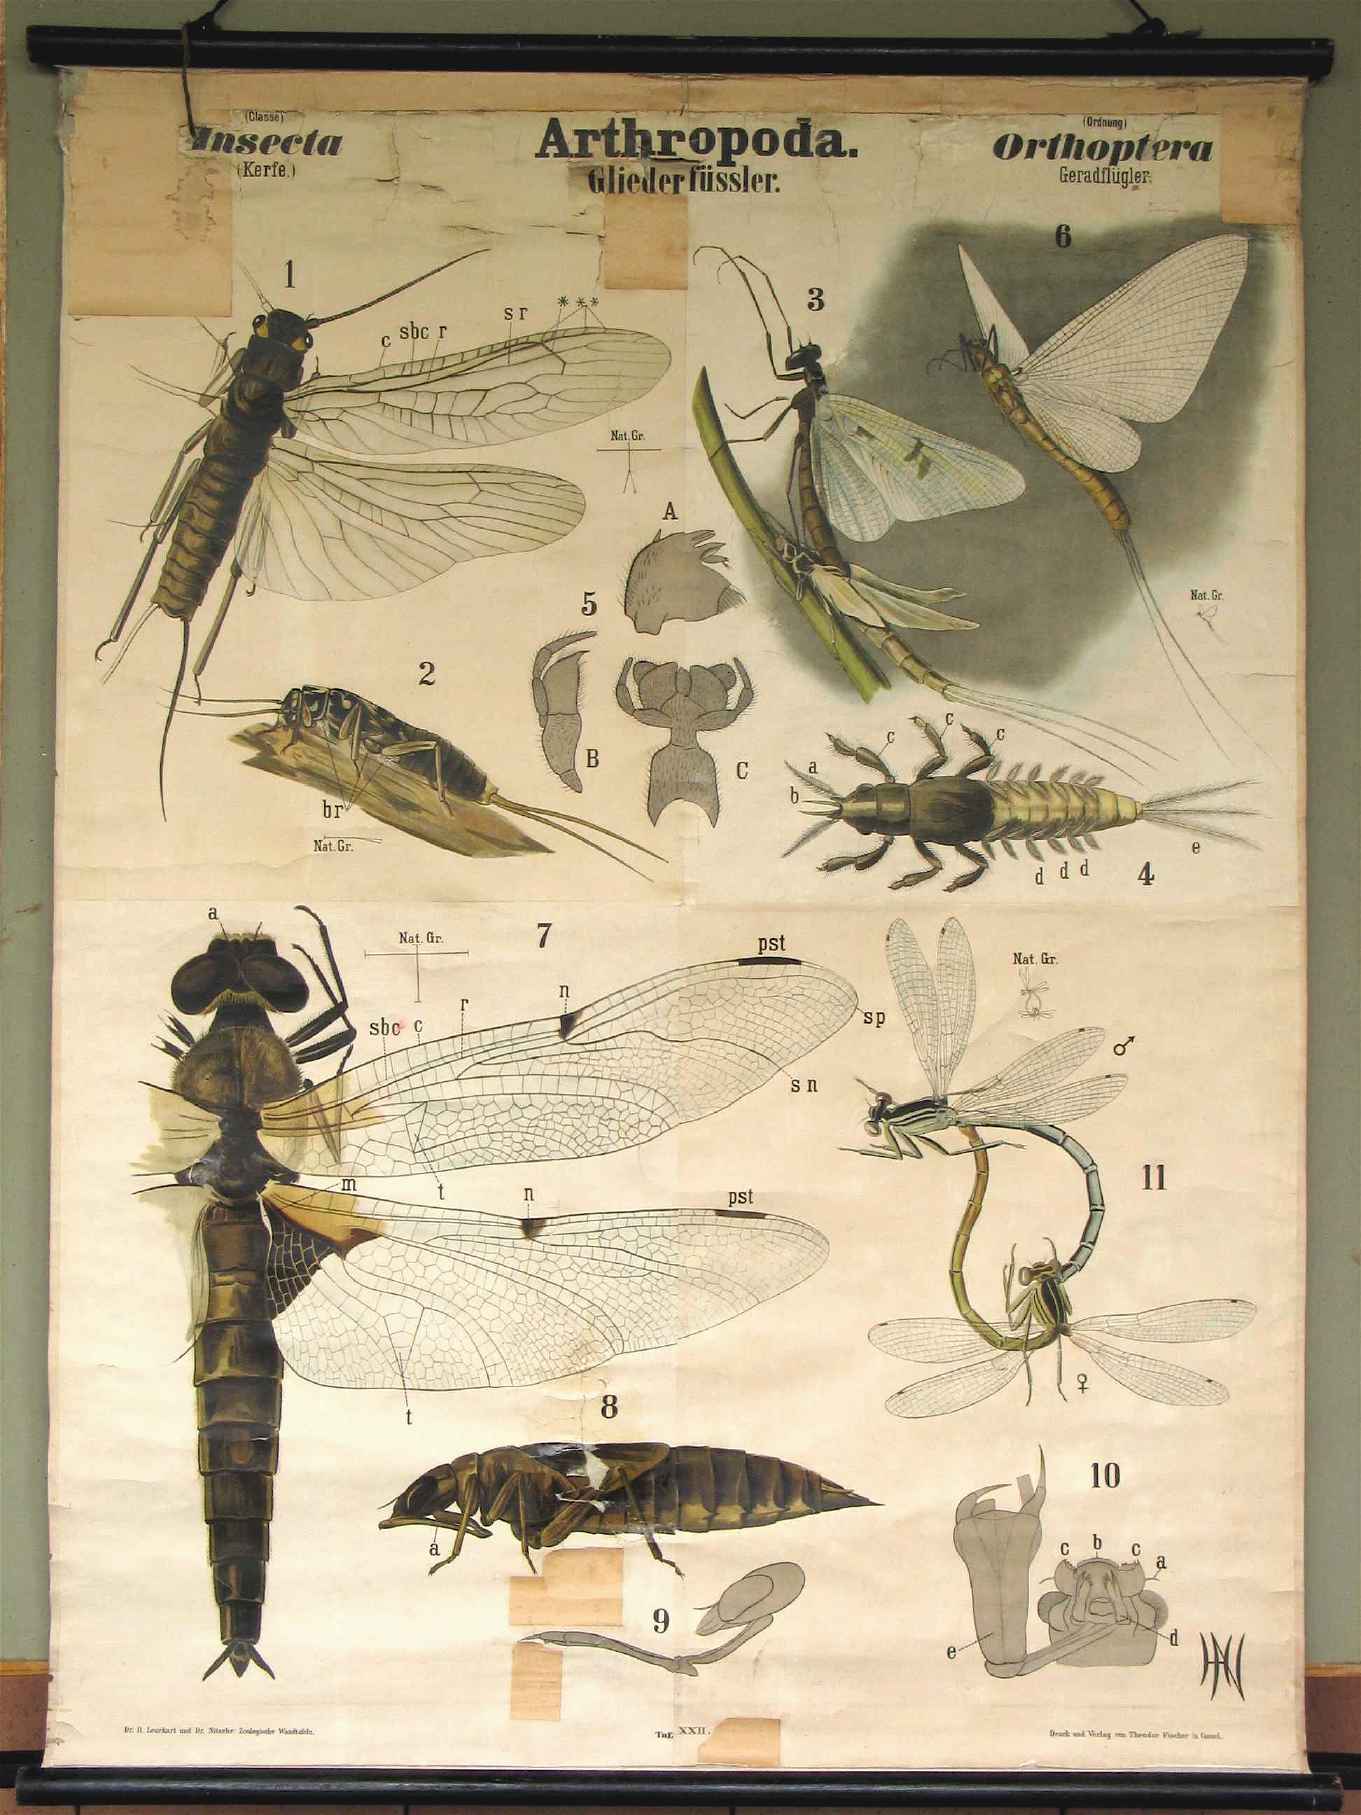 Tableau mural de Leukhart et Nitsche
(“Arthropoda”)